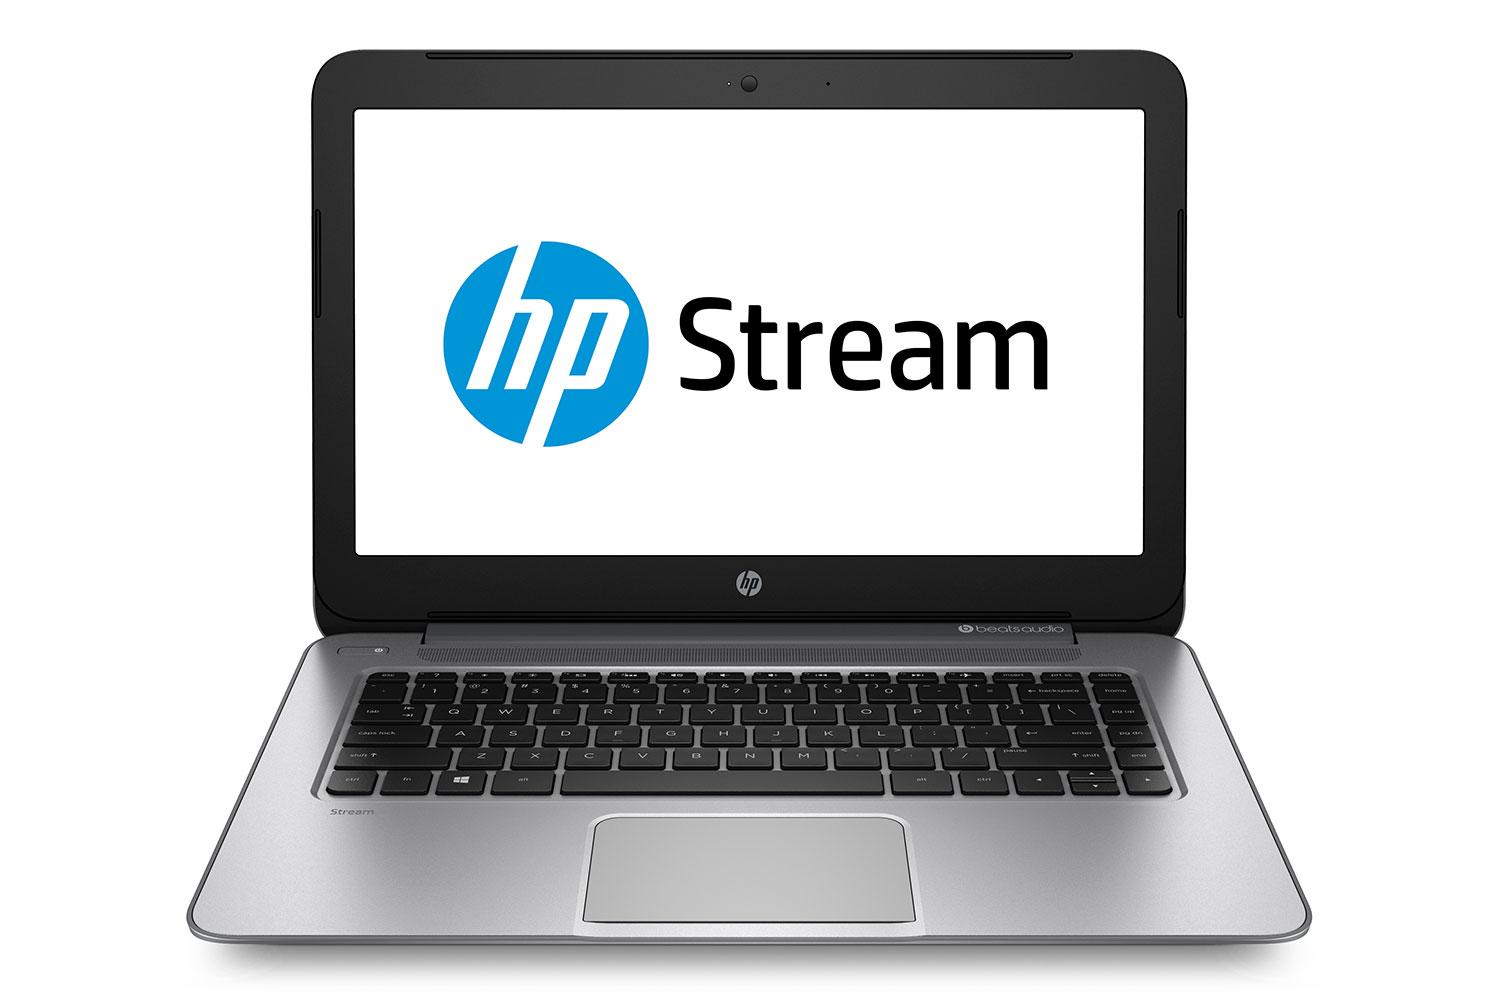 HP Stream silver press image